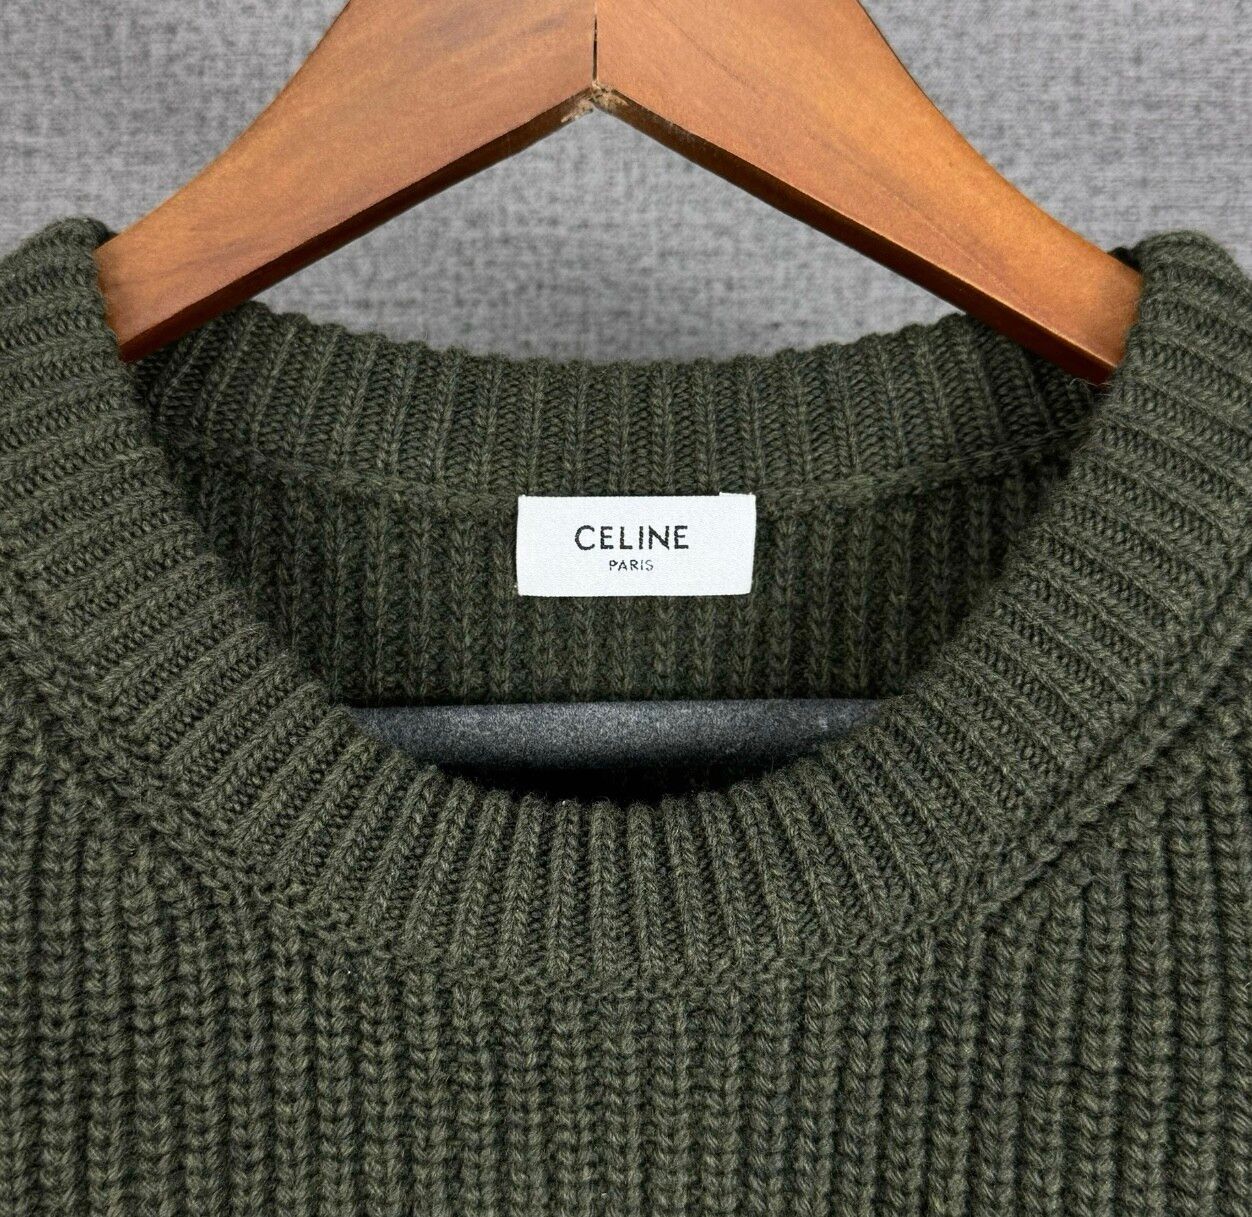 CELINE logo Leopard rib netting sweater - 2